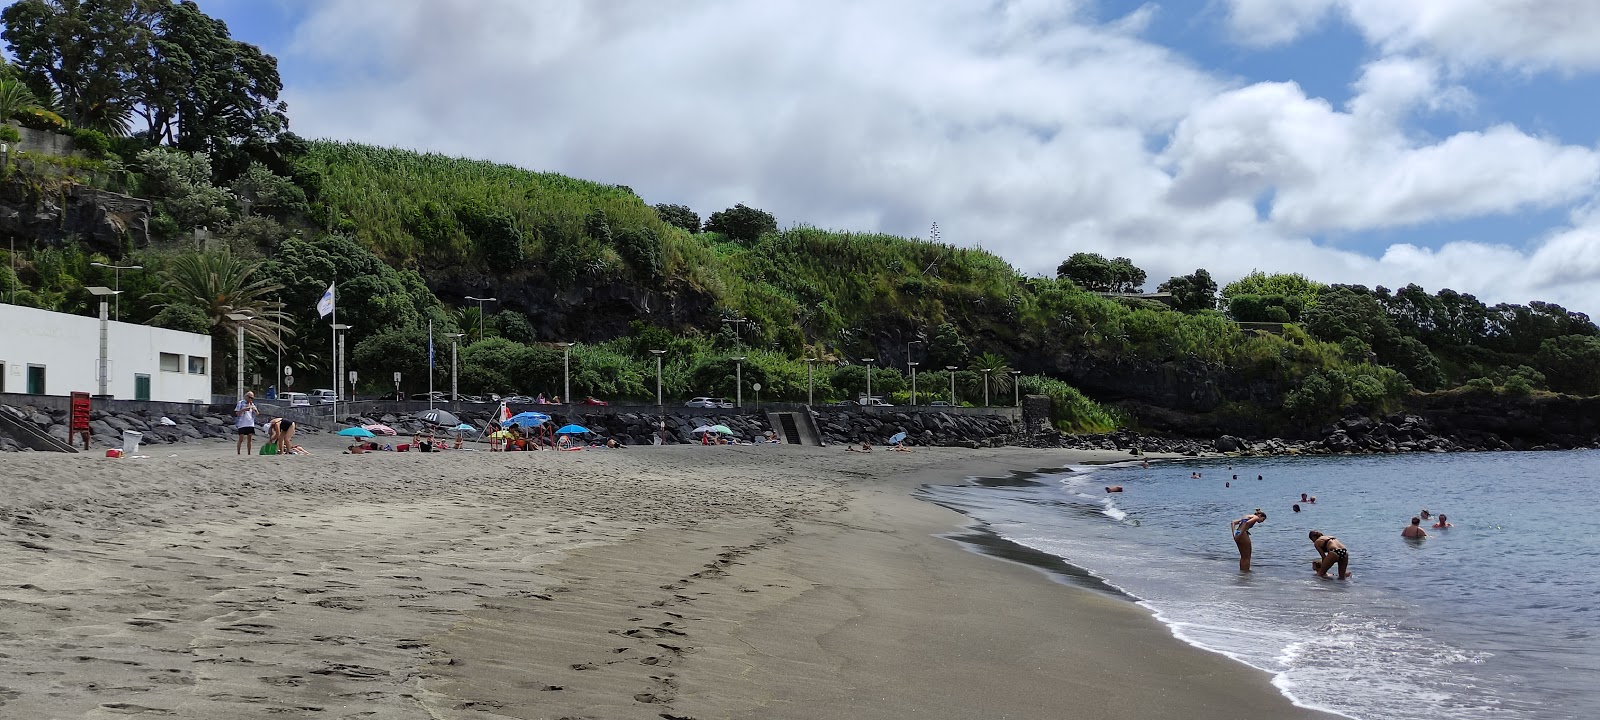 Foto de Praia da Vinha da Areia - lugar popular entre os apreciadores de relaxamento